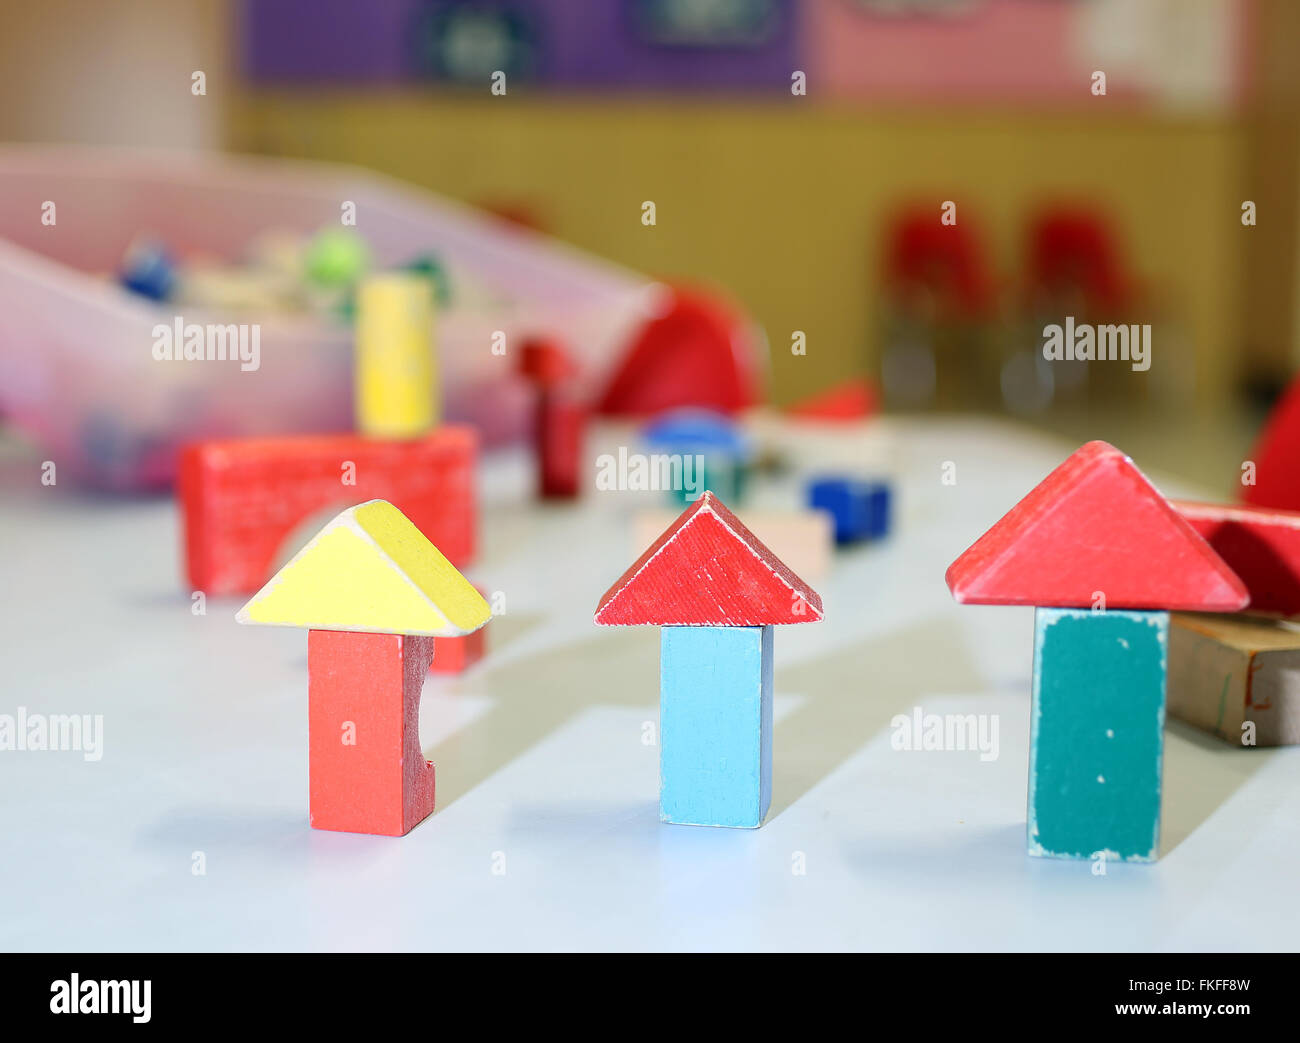 De nombreux jouets en bois et des morceaux de bâtiments dans la classe maternelle Banque D'Images